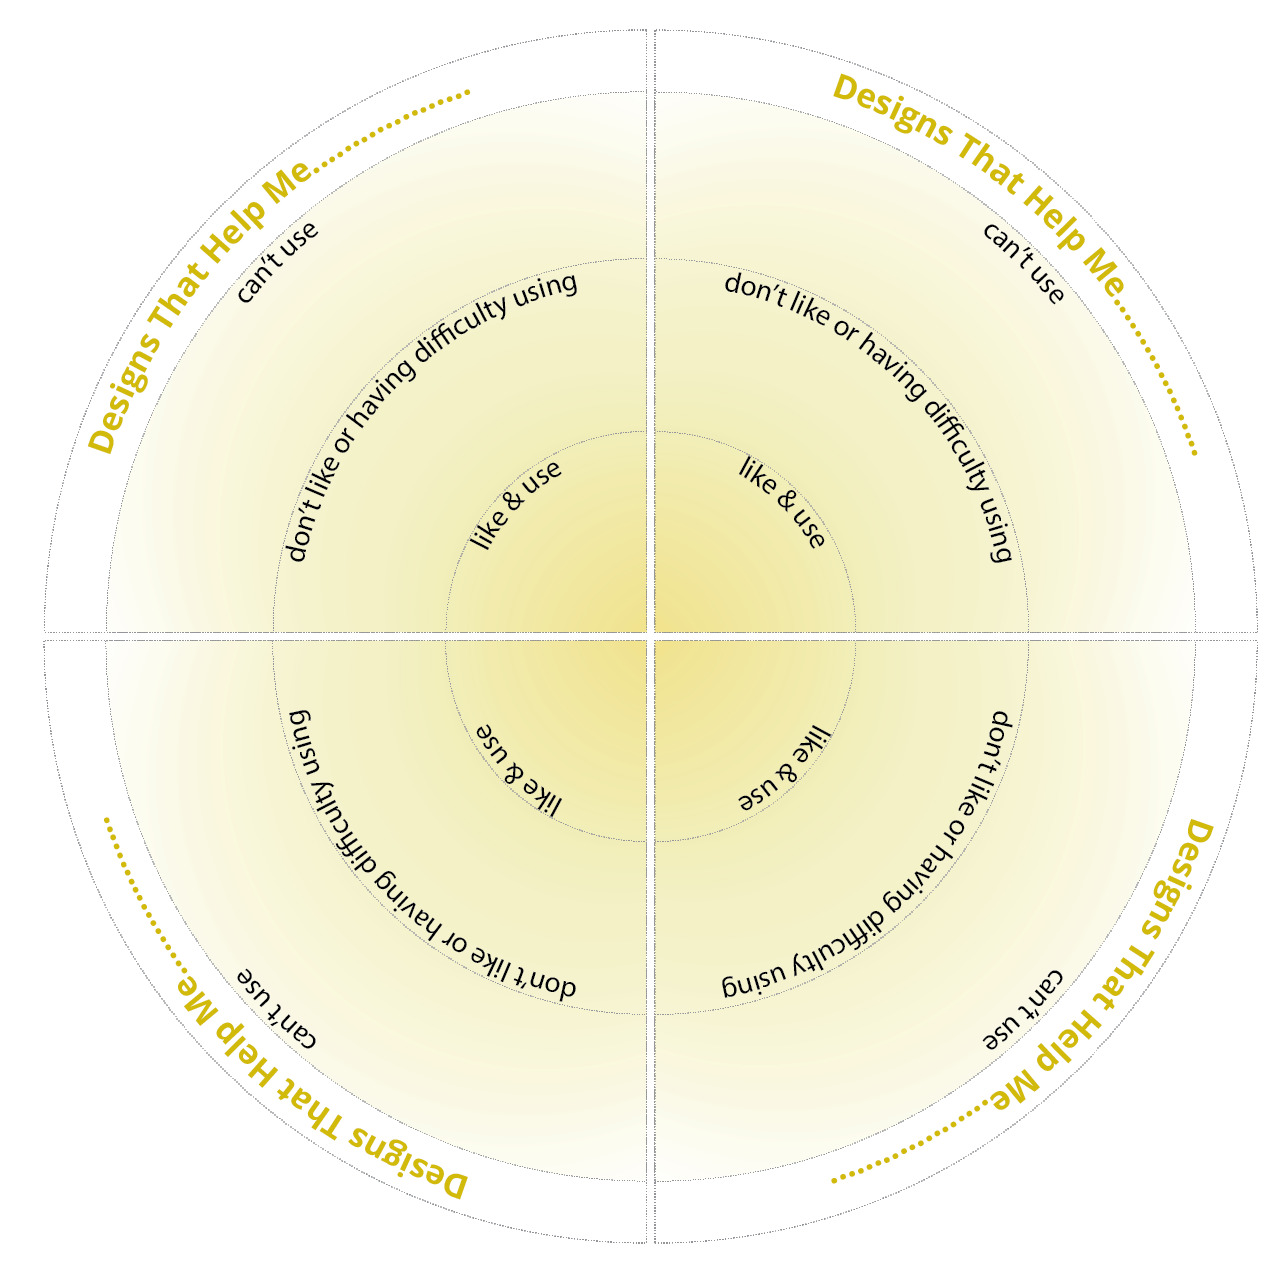 Un schéma représente un cercle divisé en quartiers. Chaque quartier
est identifié « ce prototype m'aide à... » et se divise en trois secteurs concentriques avec, au centre, « j'aime et je
l'utilise », au milieu, « Je n'aime pas ou j'ai des difficultés à l'utiliser » et, à la périphérie, « Je ne peux pas
l'utiliser ».